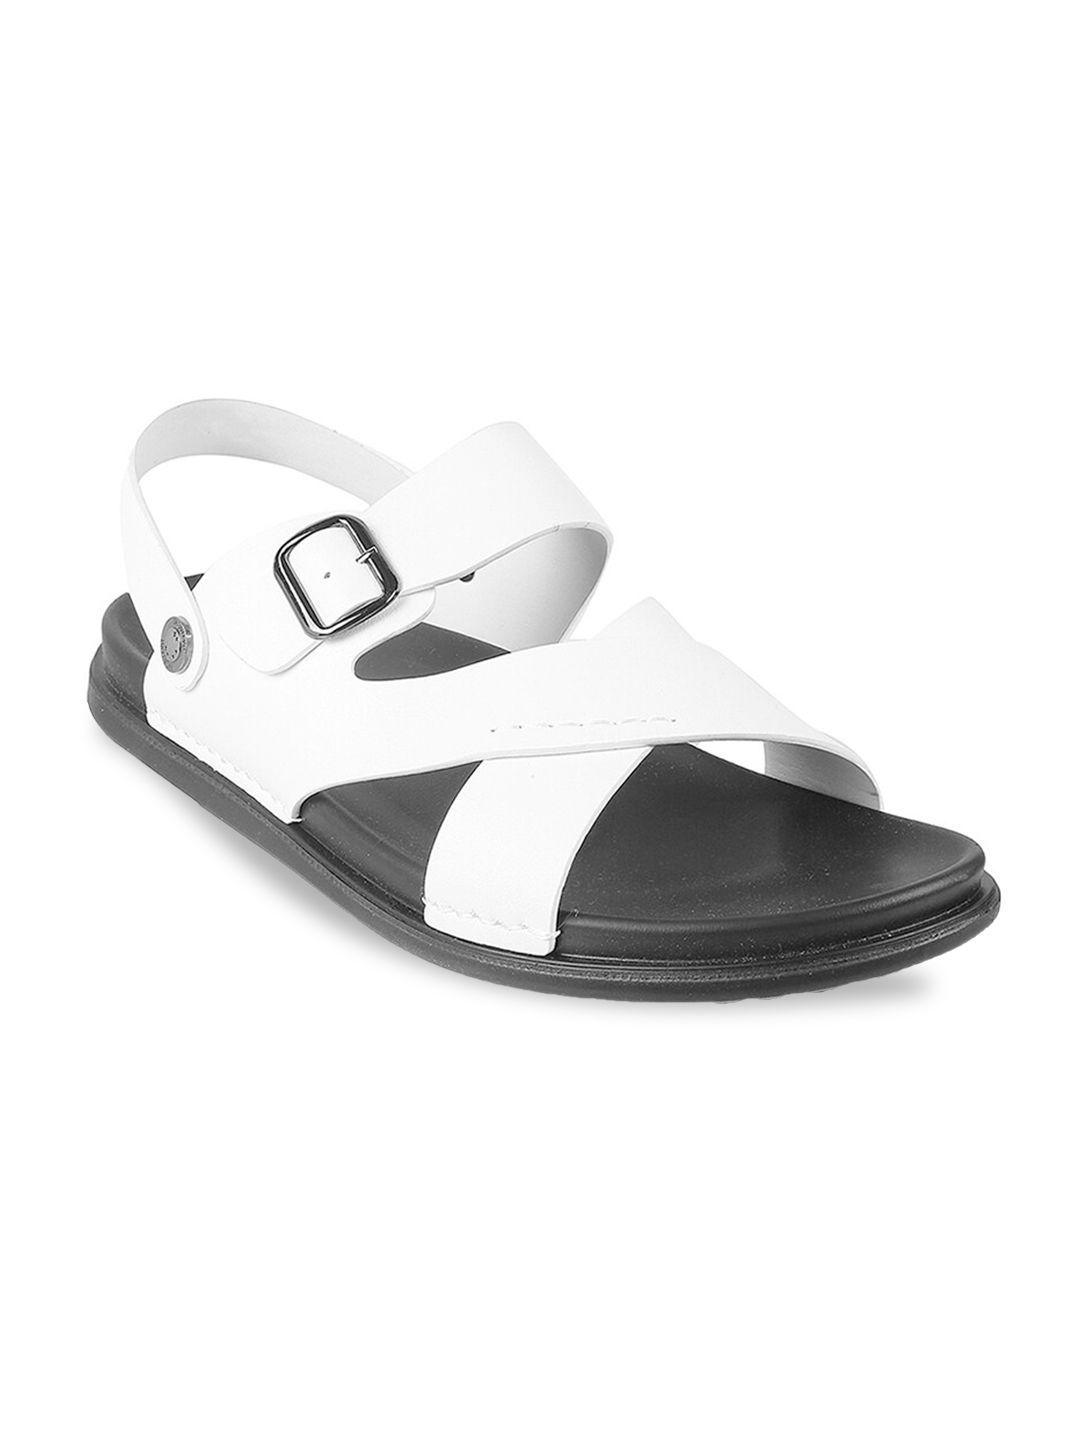 metro men white comfort sandals